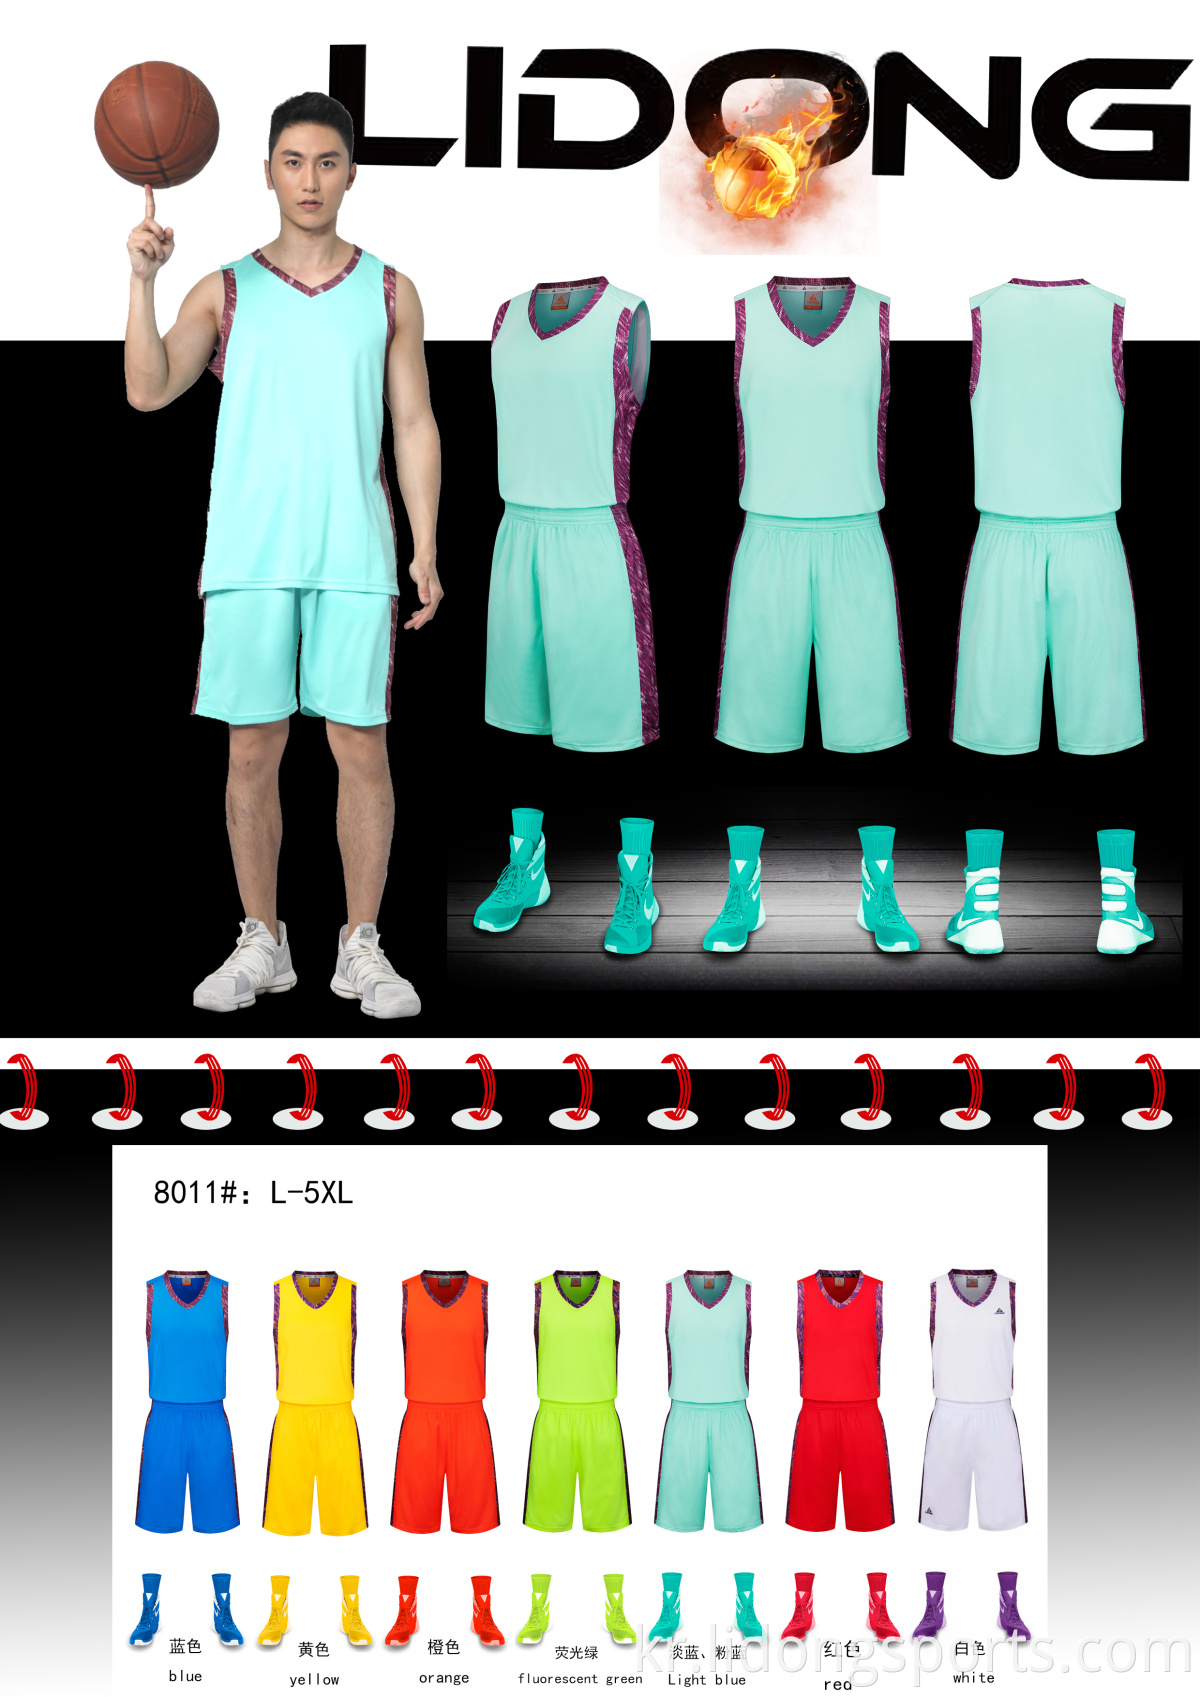 저렴한 커스텀 뜨거운 판매 블랭크 농구 유니폼 유니폼 디자인 컬러 블루